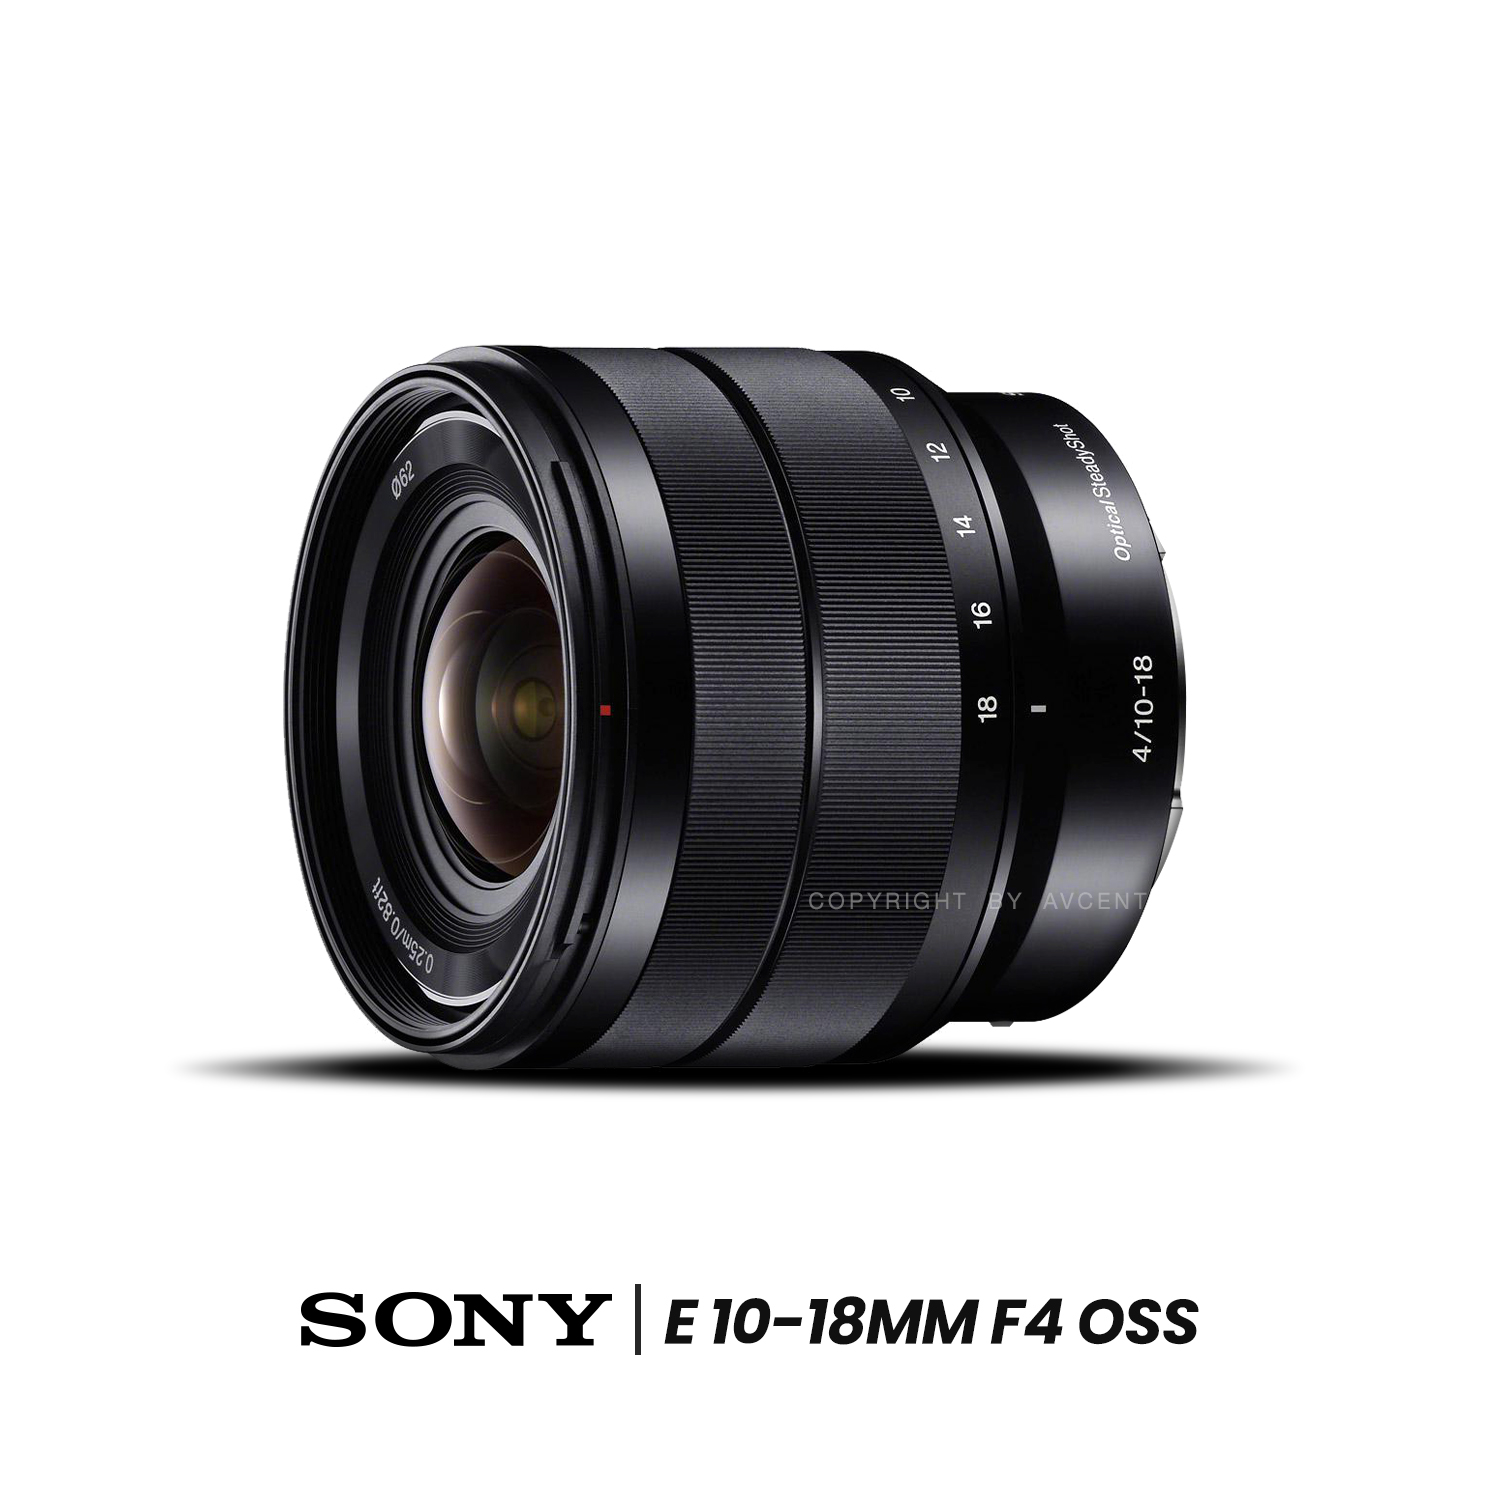 Sony Lens E 10-18 mm. F4 OSS